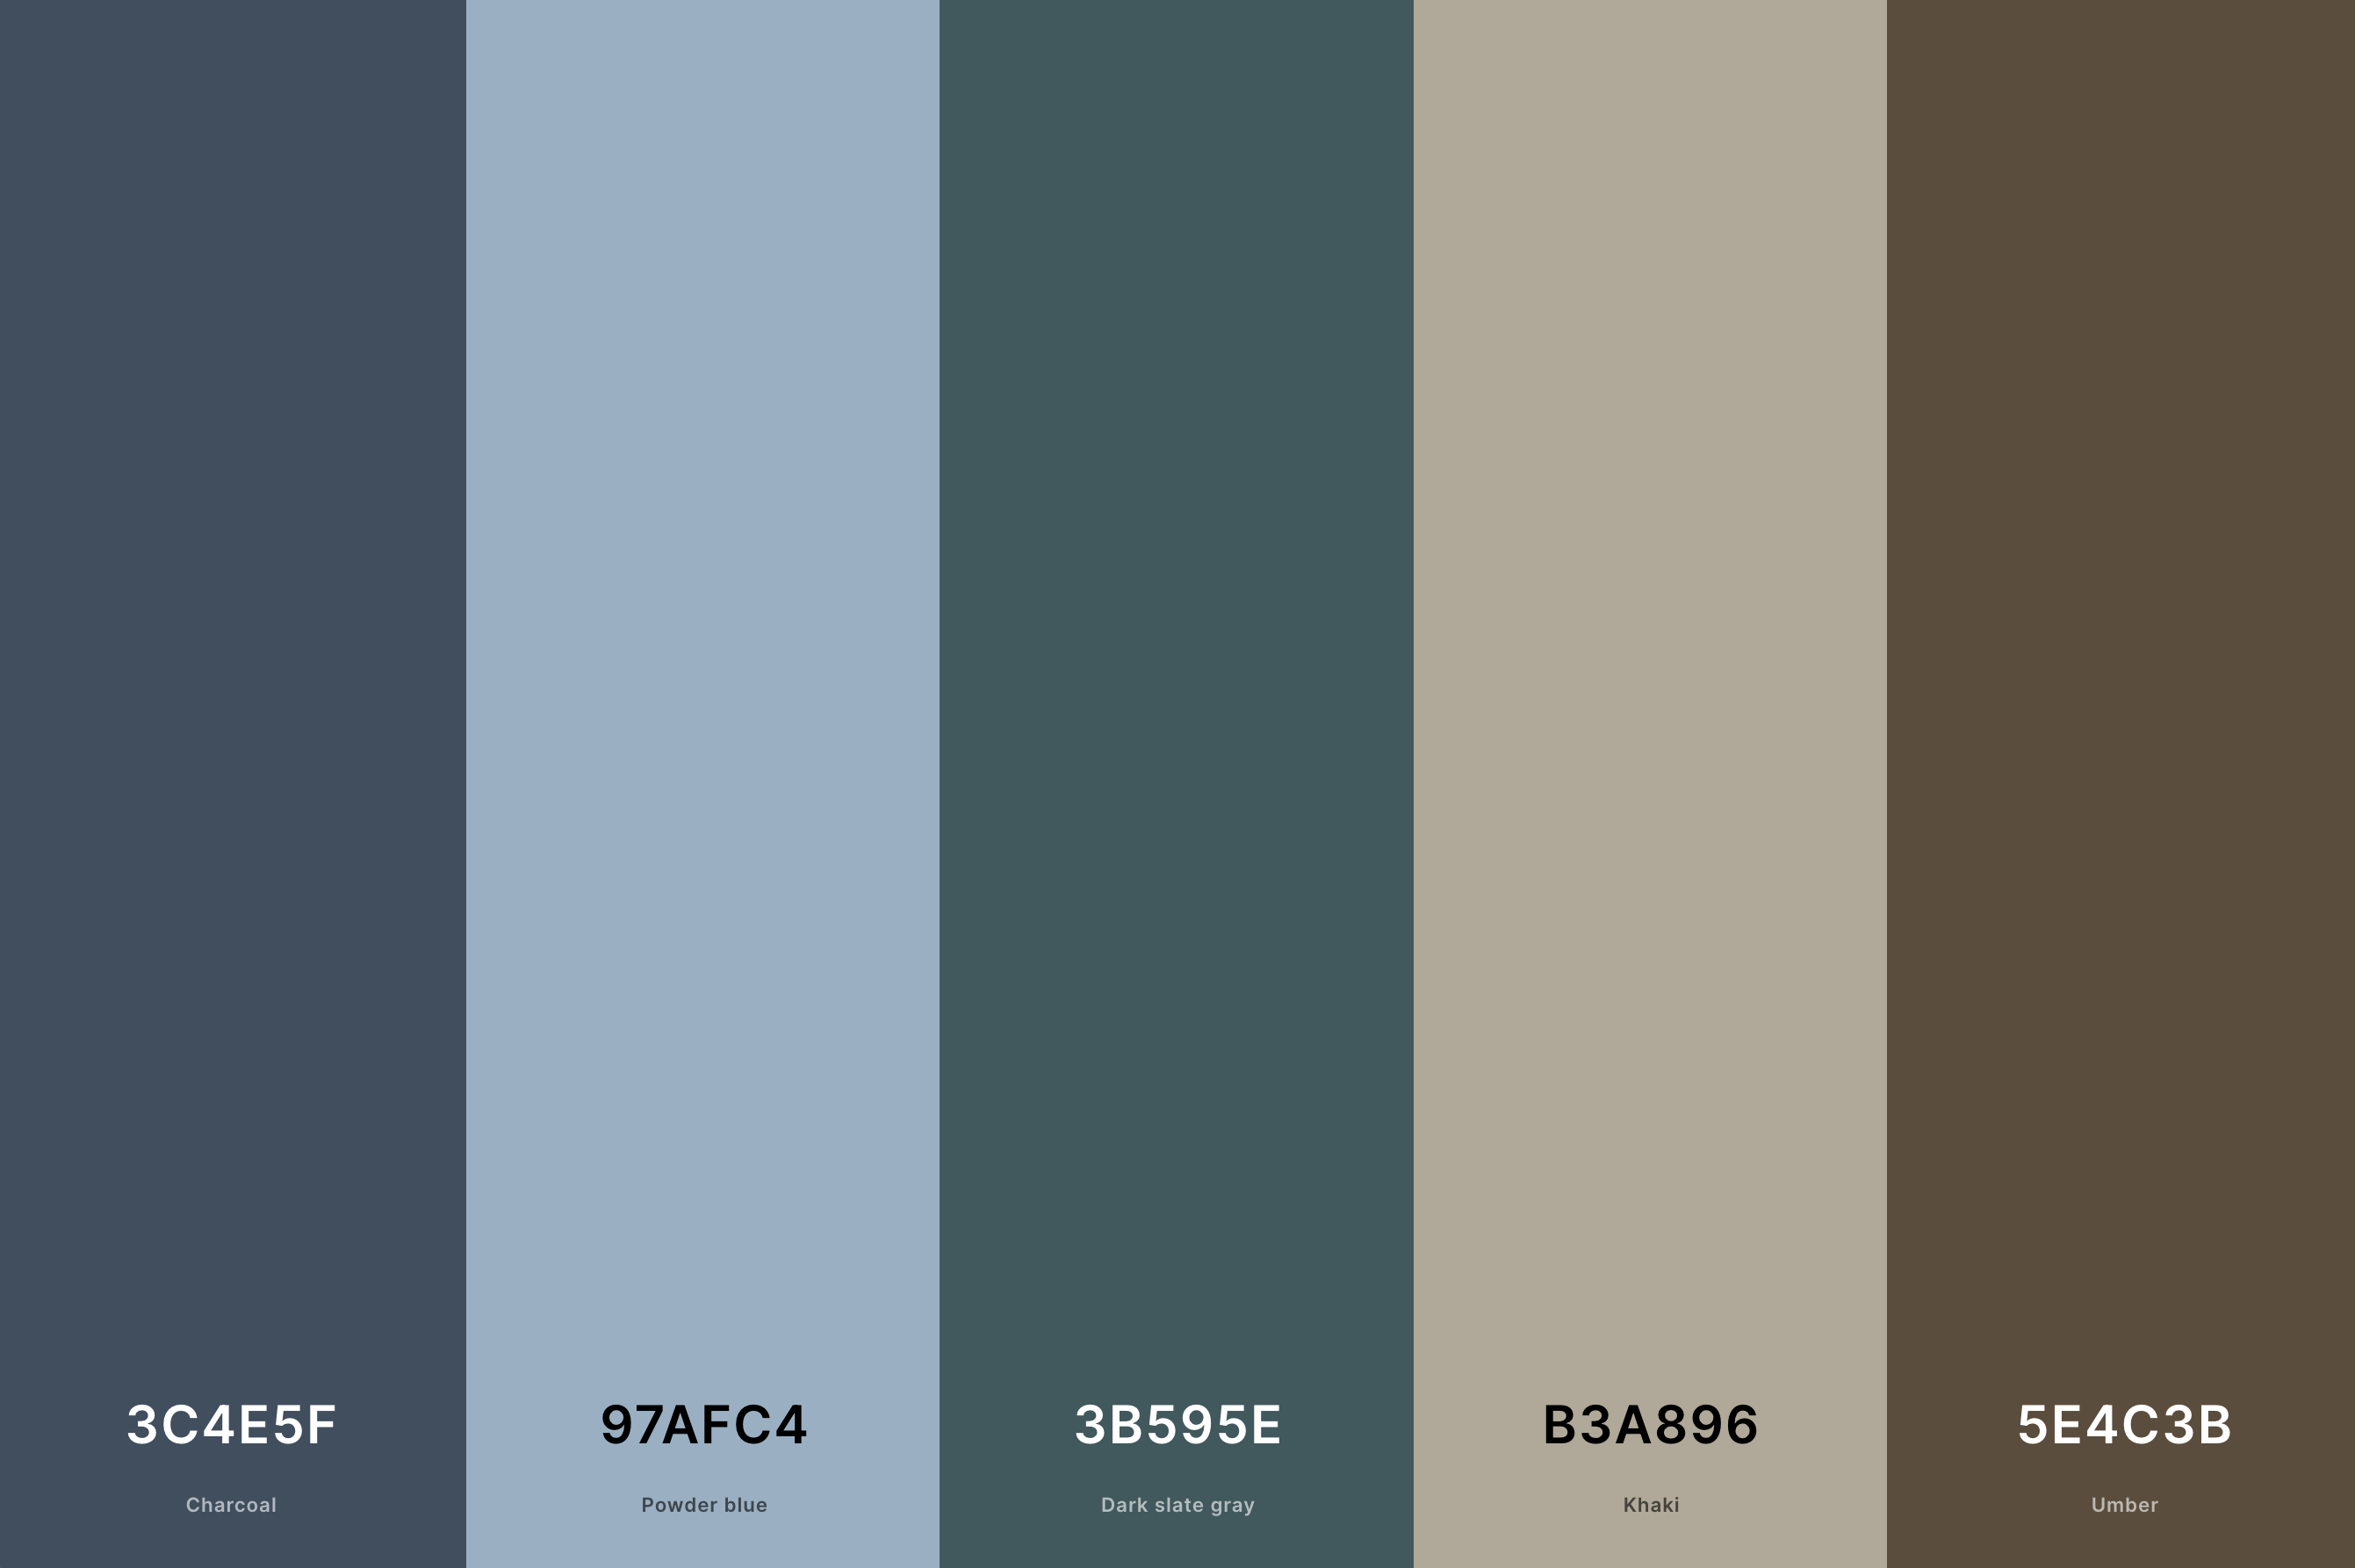 3. Indigo Batik Color Palette Color Palette with Charcoal (Hex #3C4E5F) + Powder Blue (Hex #97AFC4) + Dark Slate Gray (Hex #3B595E) + Khaki (Hex #B3A896) + Umber (Hex #5E4C3B) Color Palette with Hex Codes